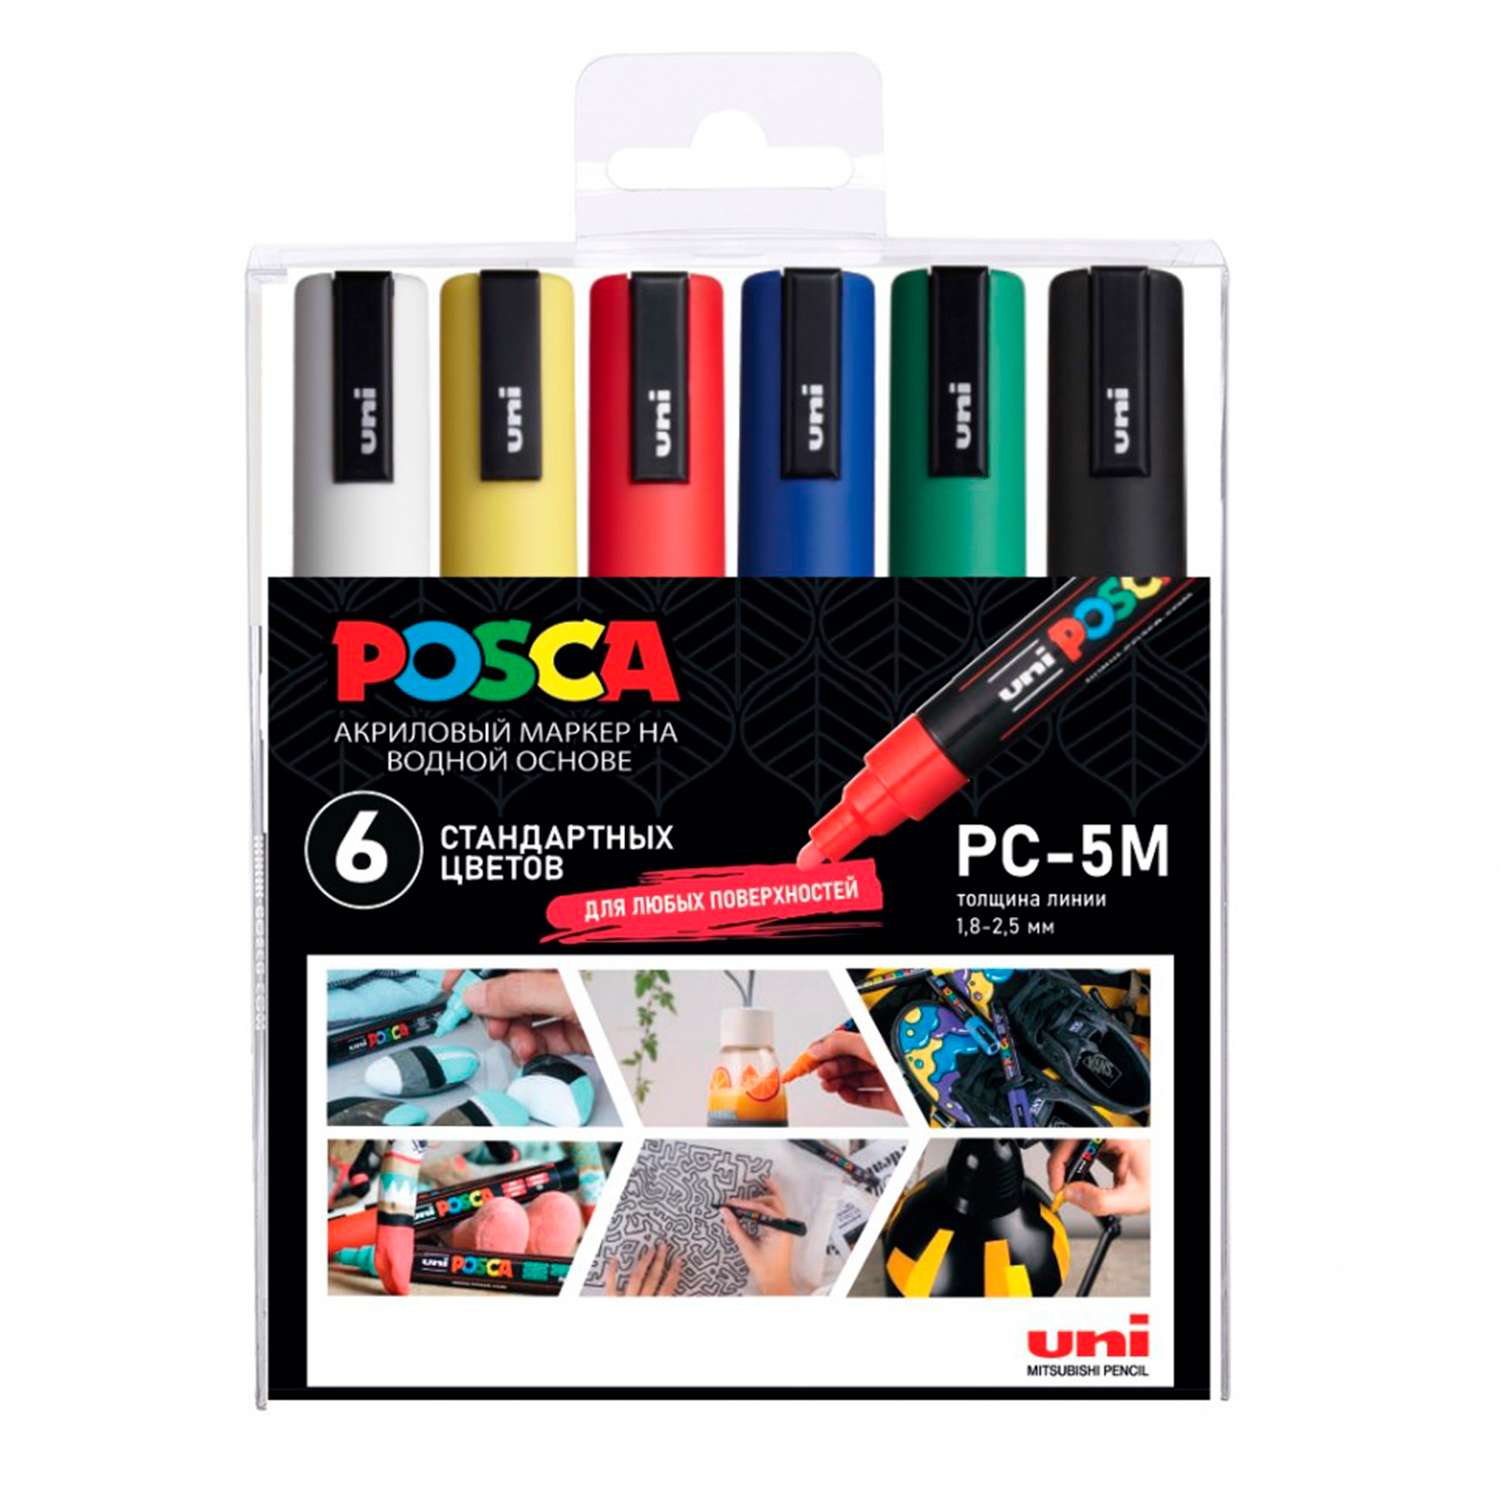 Набор акриловых маркеров UNI Posca PC-5M наконечник овал 1.8 - 2.5 мм. 6 цветов - фото 4